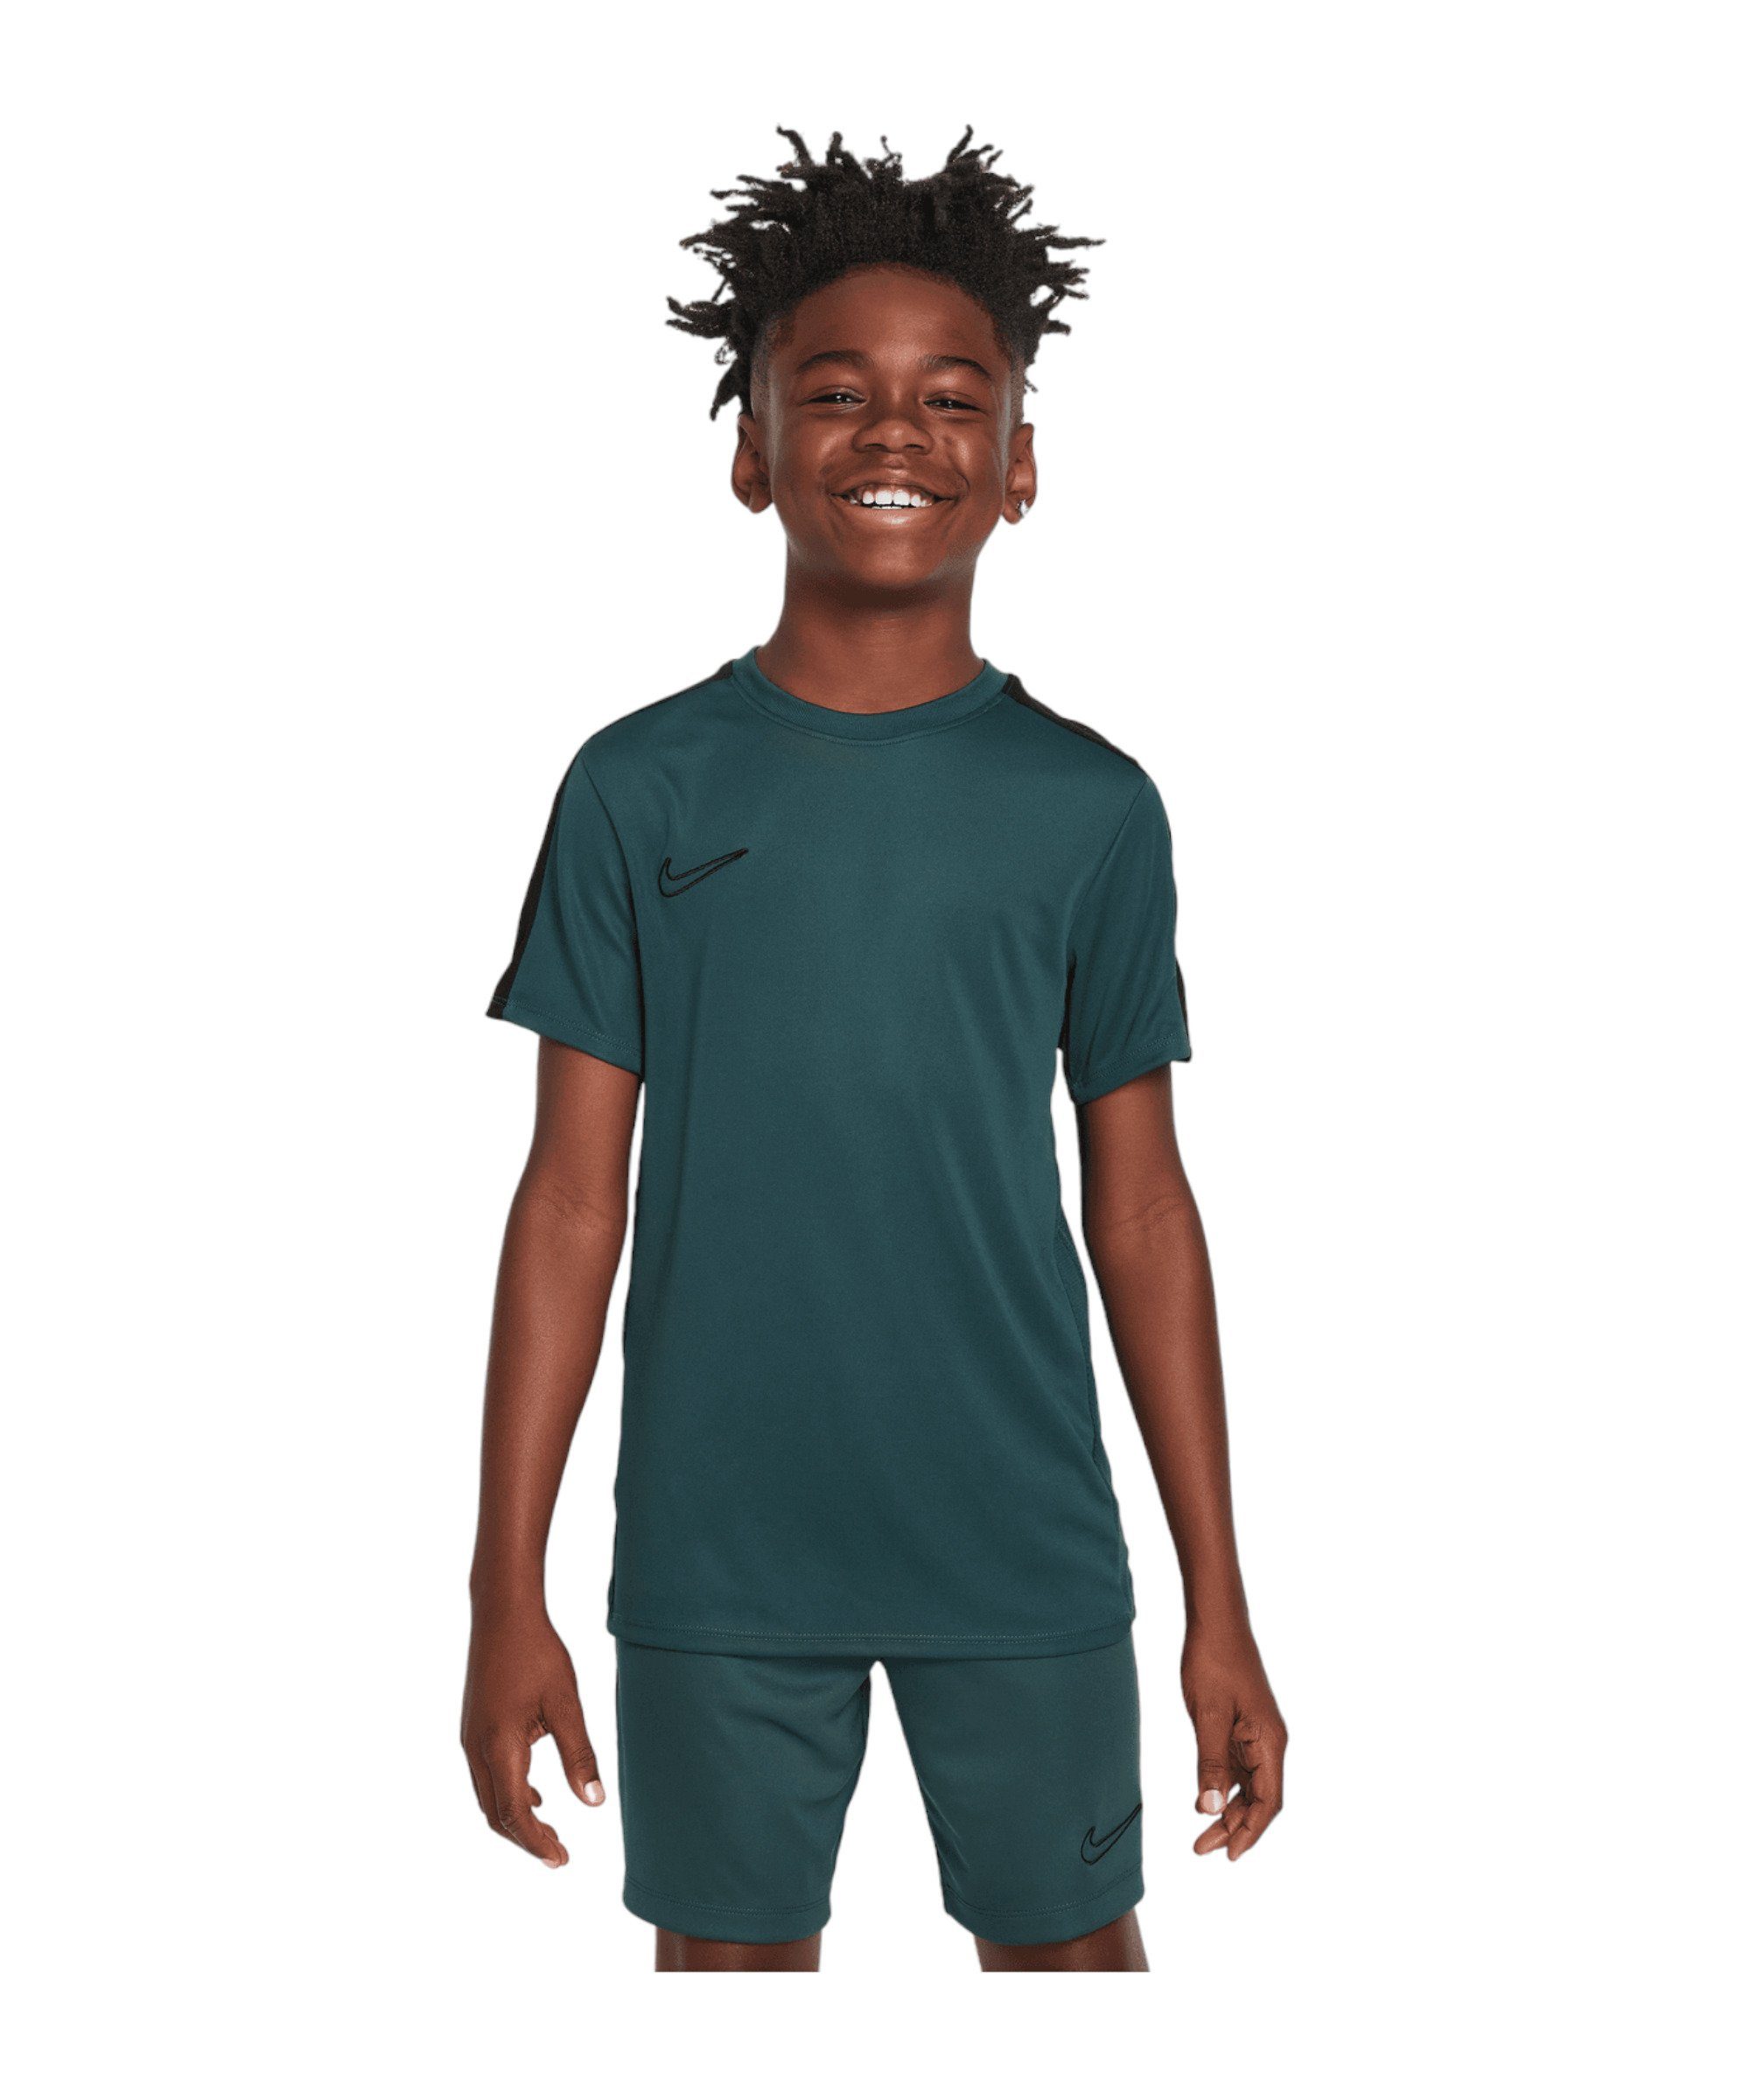 Academy T-Shirt 23 T-Shirt default Nike gruen